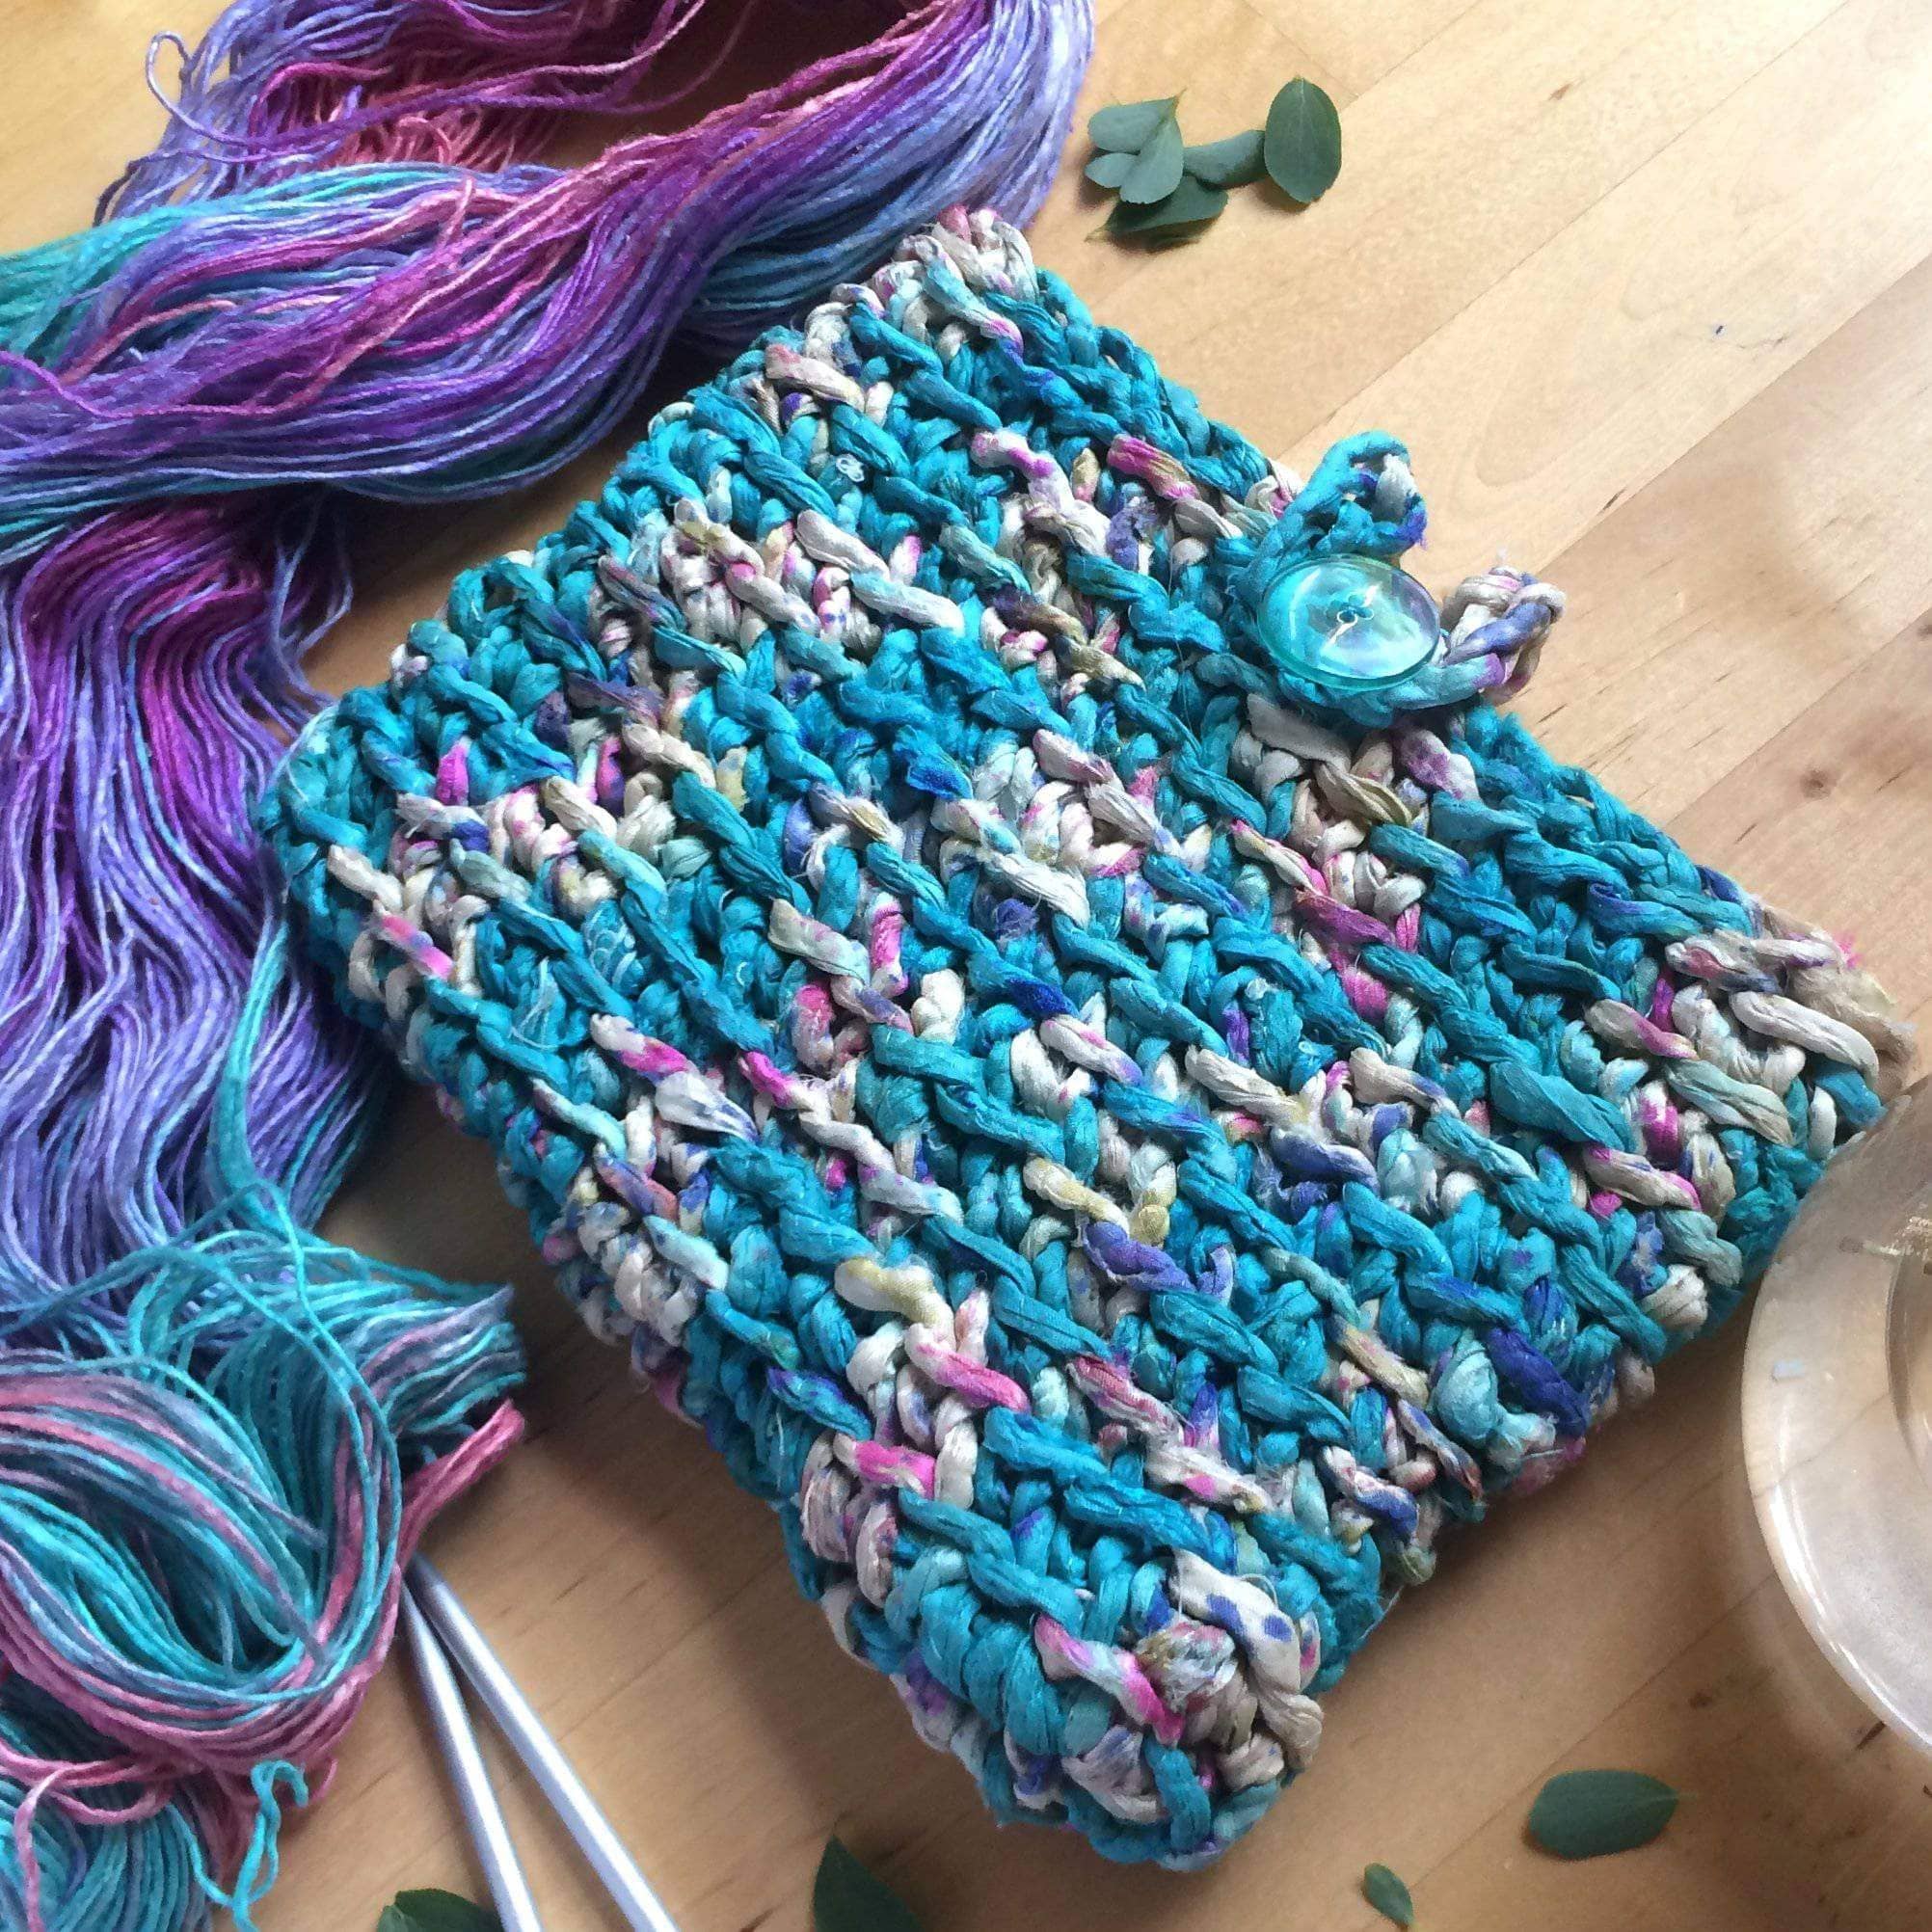 FREE PATTERN FRIDAY: Cut The Cord Crochet Clutch - Darn Good Yarn